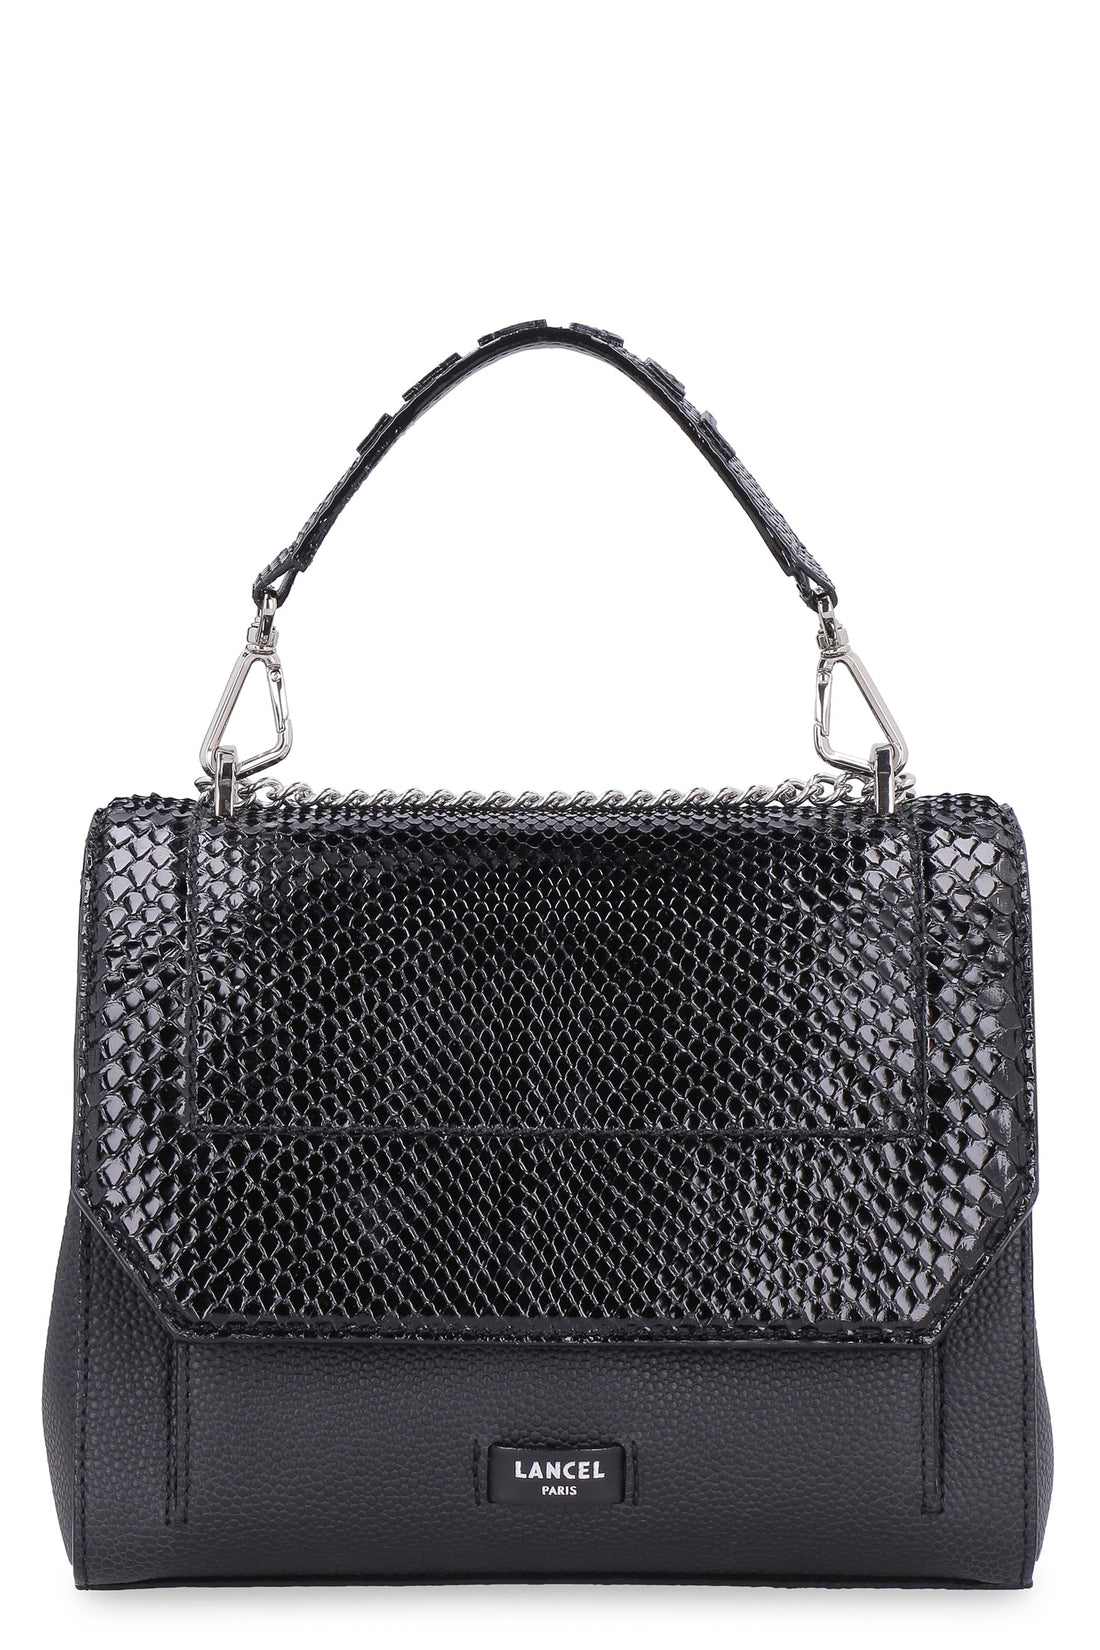 Lancel-OUTLET-SALE-Ninon leather handbag-ARCHIVIST